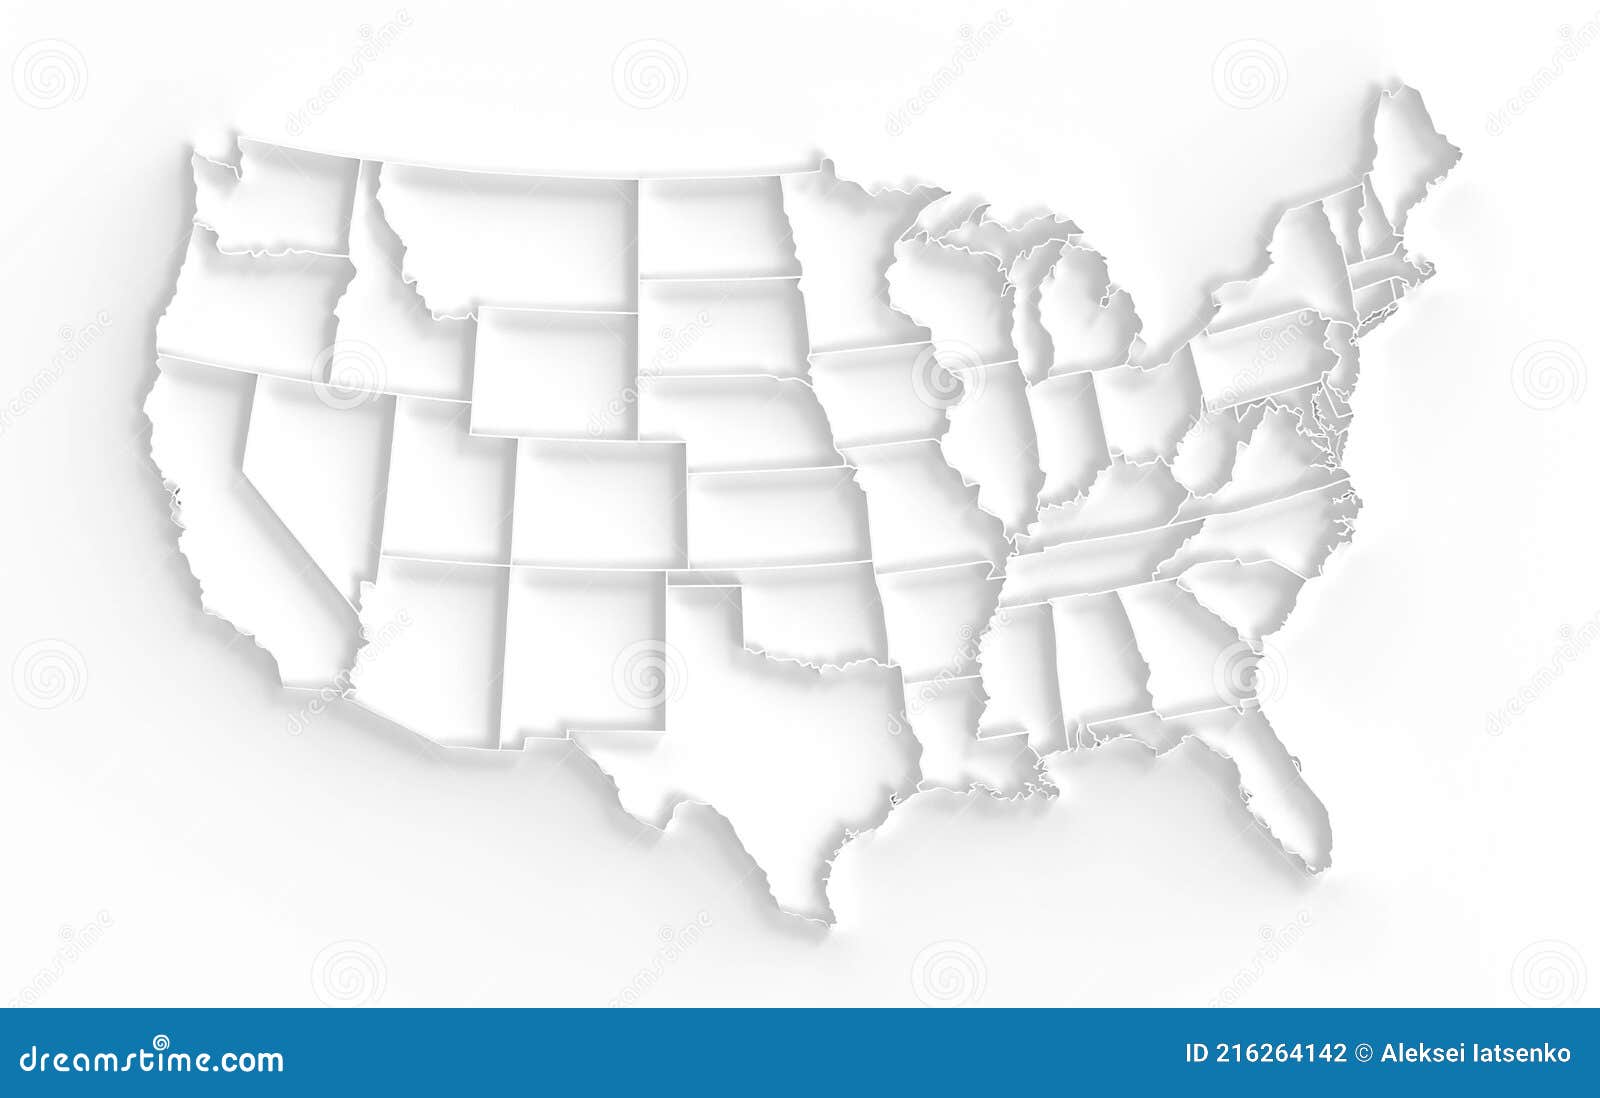 Khám phá Bản đồ Mỹ trắng nền đầy đủ thông tin về các tiểu bang, thành phố và địa danh nổi tiếng. Bạn sẽ được mê hoặc với màu trắng sáng bóng và độ chi tiết tinh tế của bản đồ này.